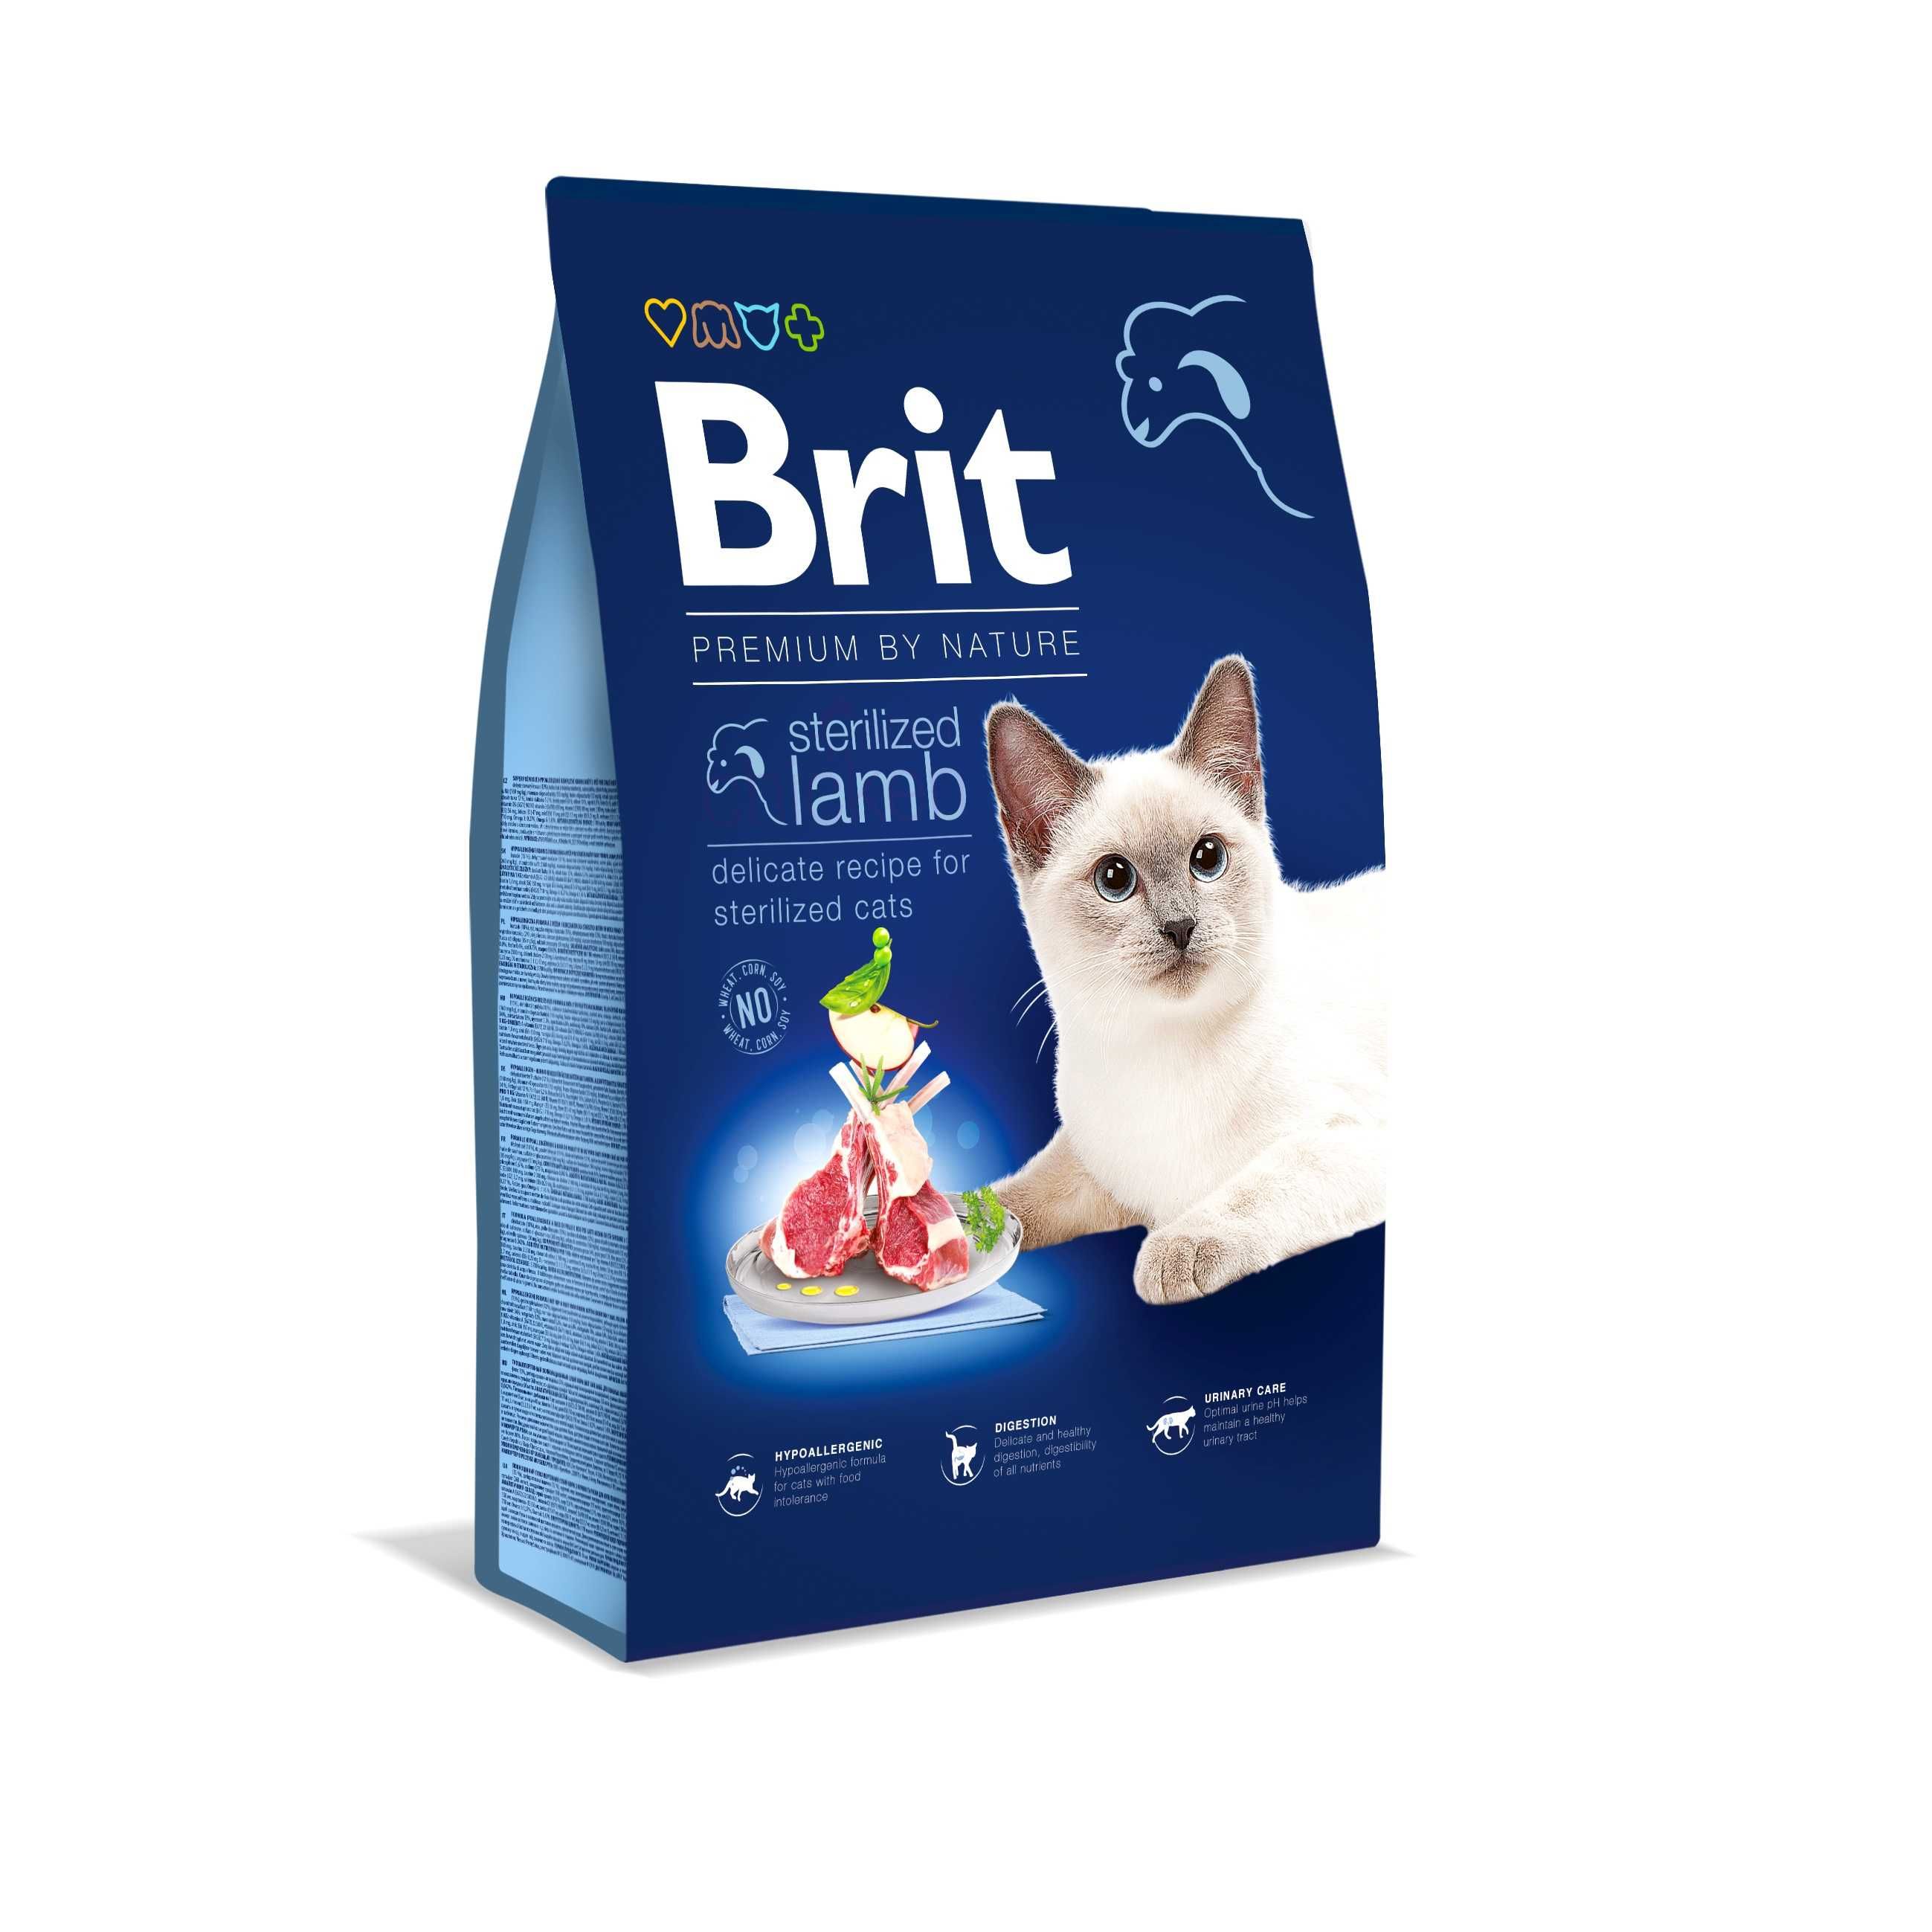 Brit Premium Nature Cat Sterilized lamb корм д/котов ягненок 1,5кг 8кг